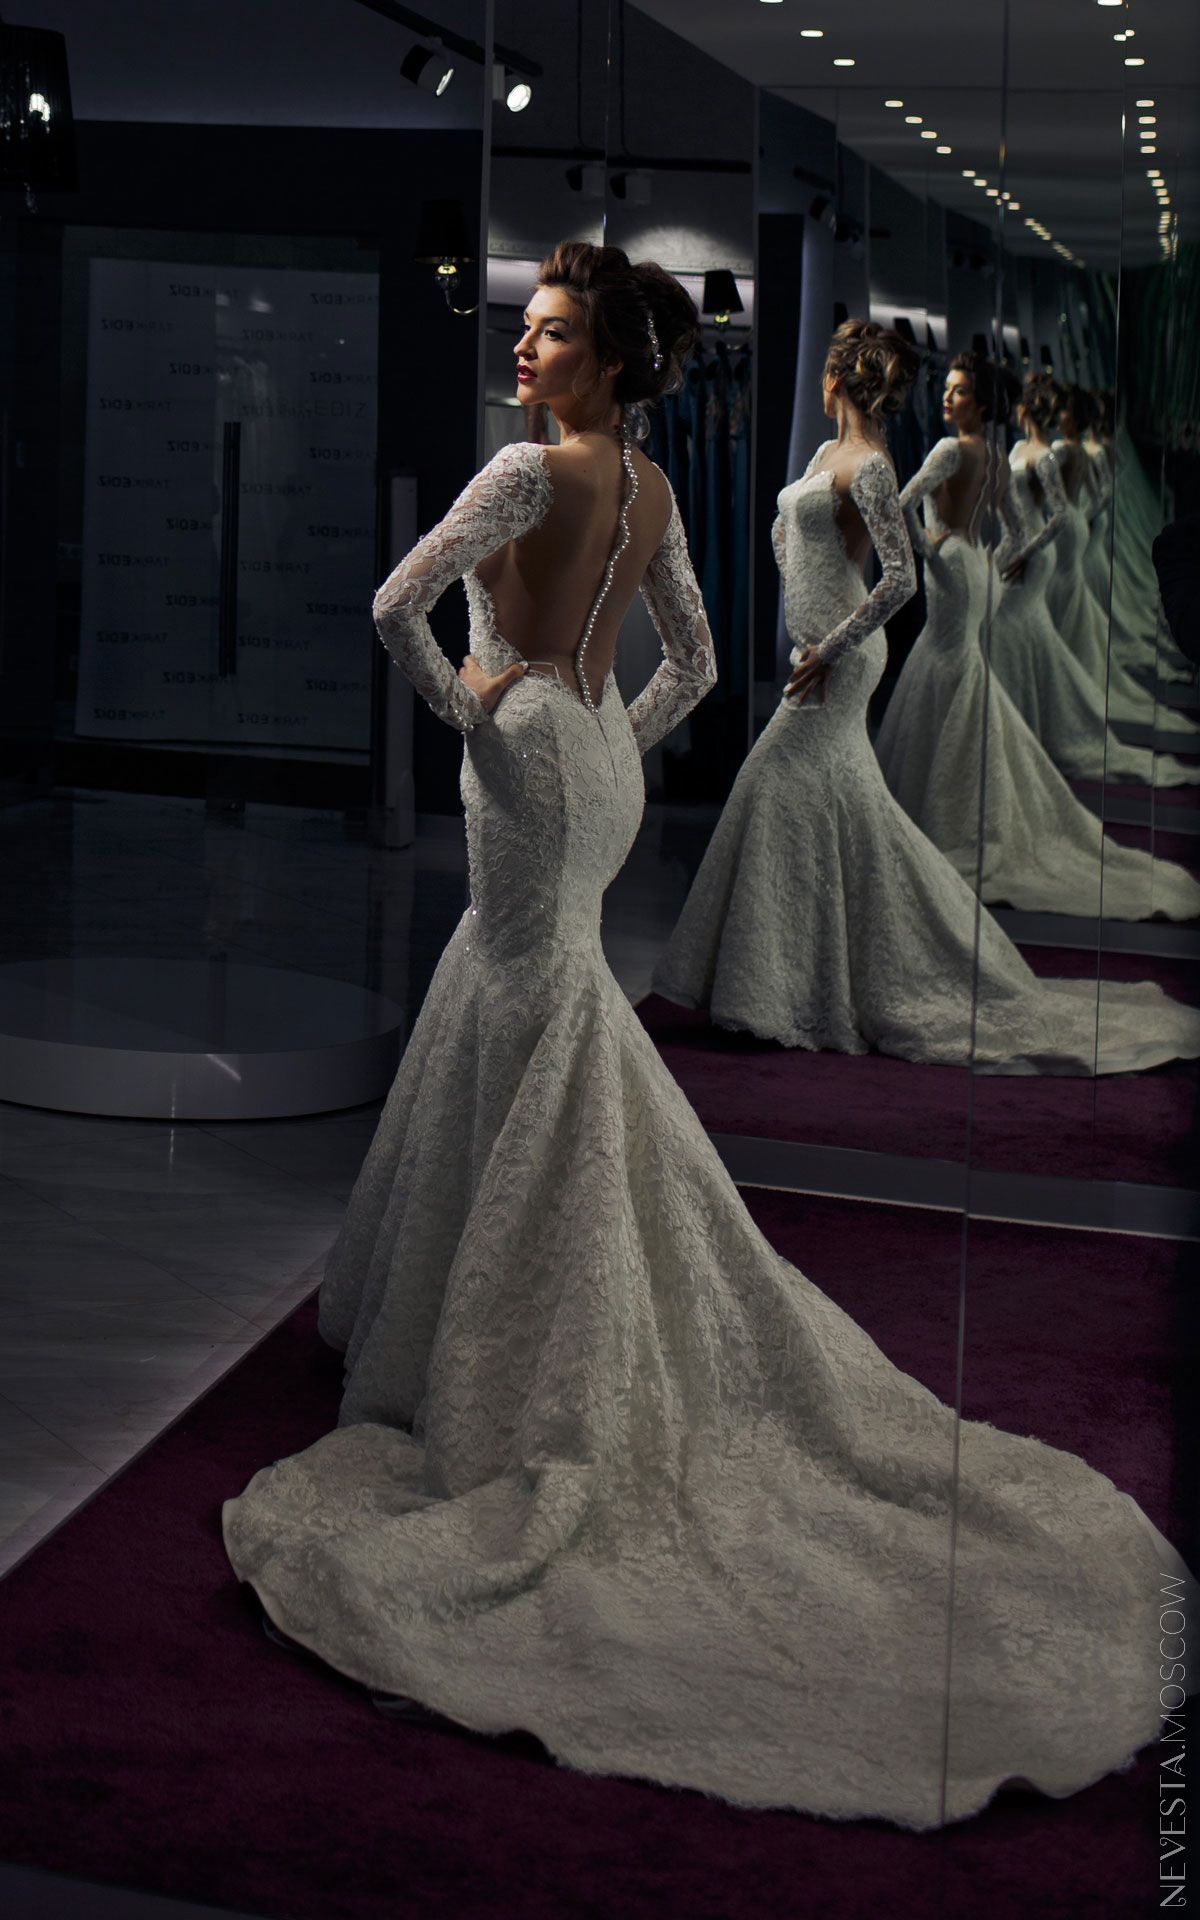 Орнелла Шигапова примеряет свадебное платье